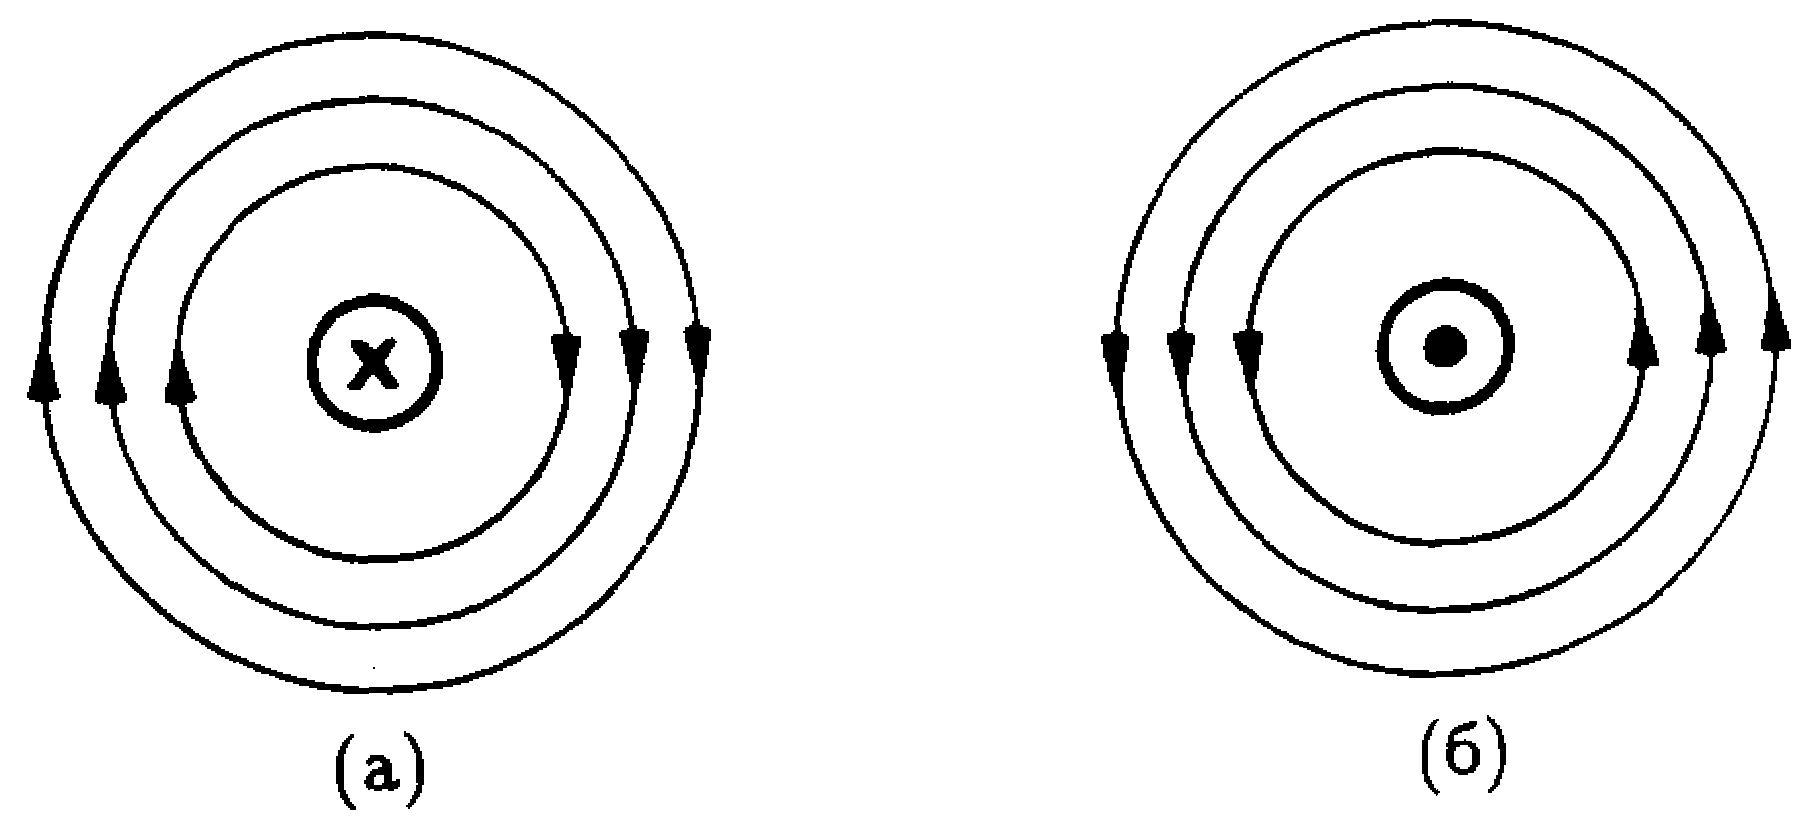 Линии магнитной индукции прямого проводника. Линии магнитного поля проводника с током. Направление магнитного поля вокруг проводника. Направление линий магнитного поля прямого проводника с током. Направление магнитного поля прямого проводника с током